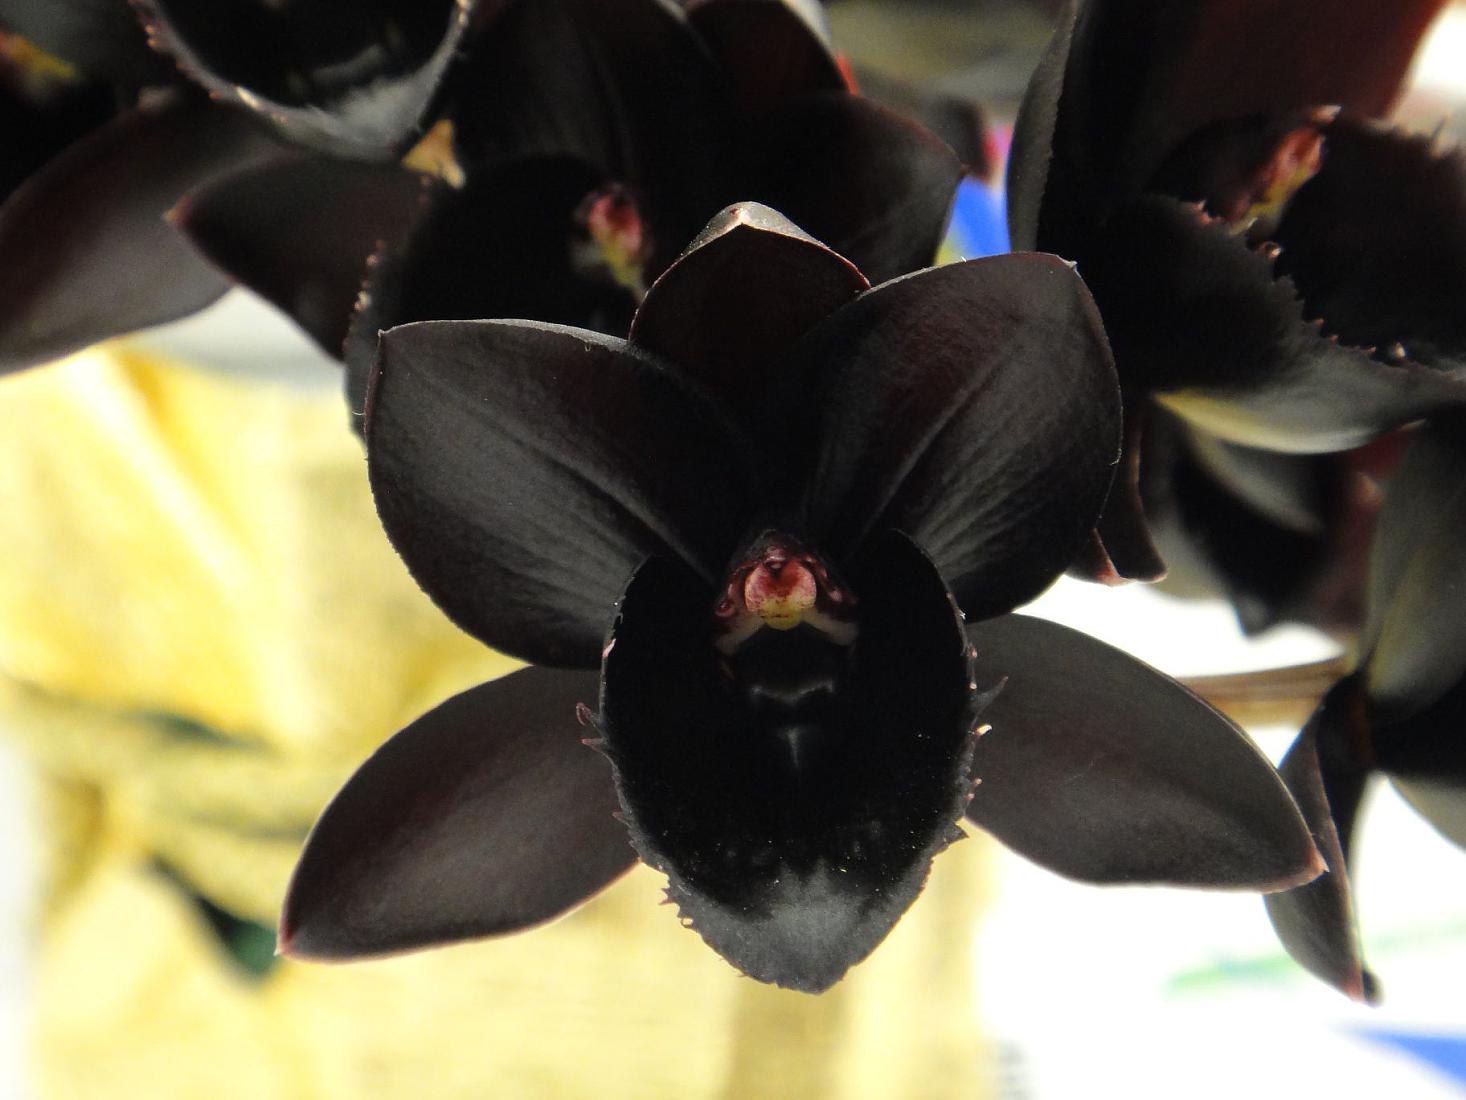 Пхалаенопсис - црни цвет орхидеје, како изгледа на фотографији